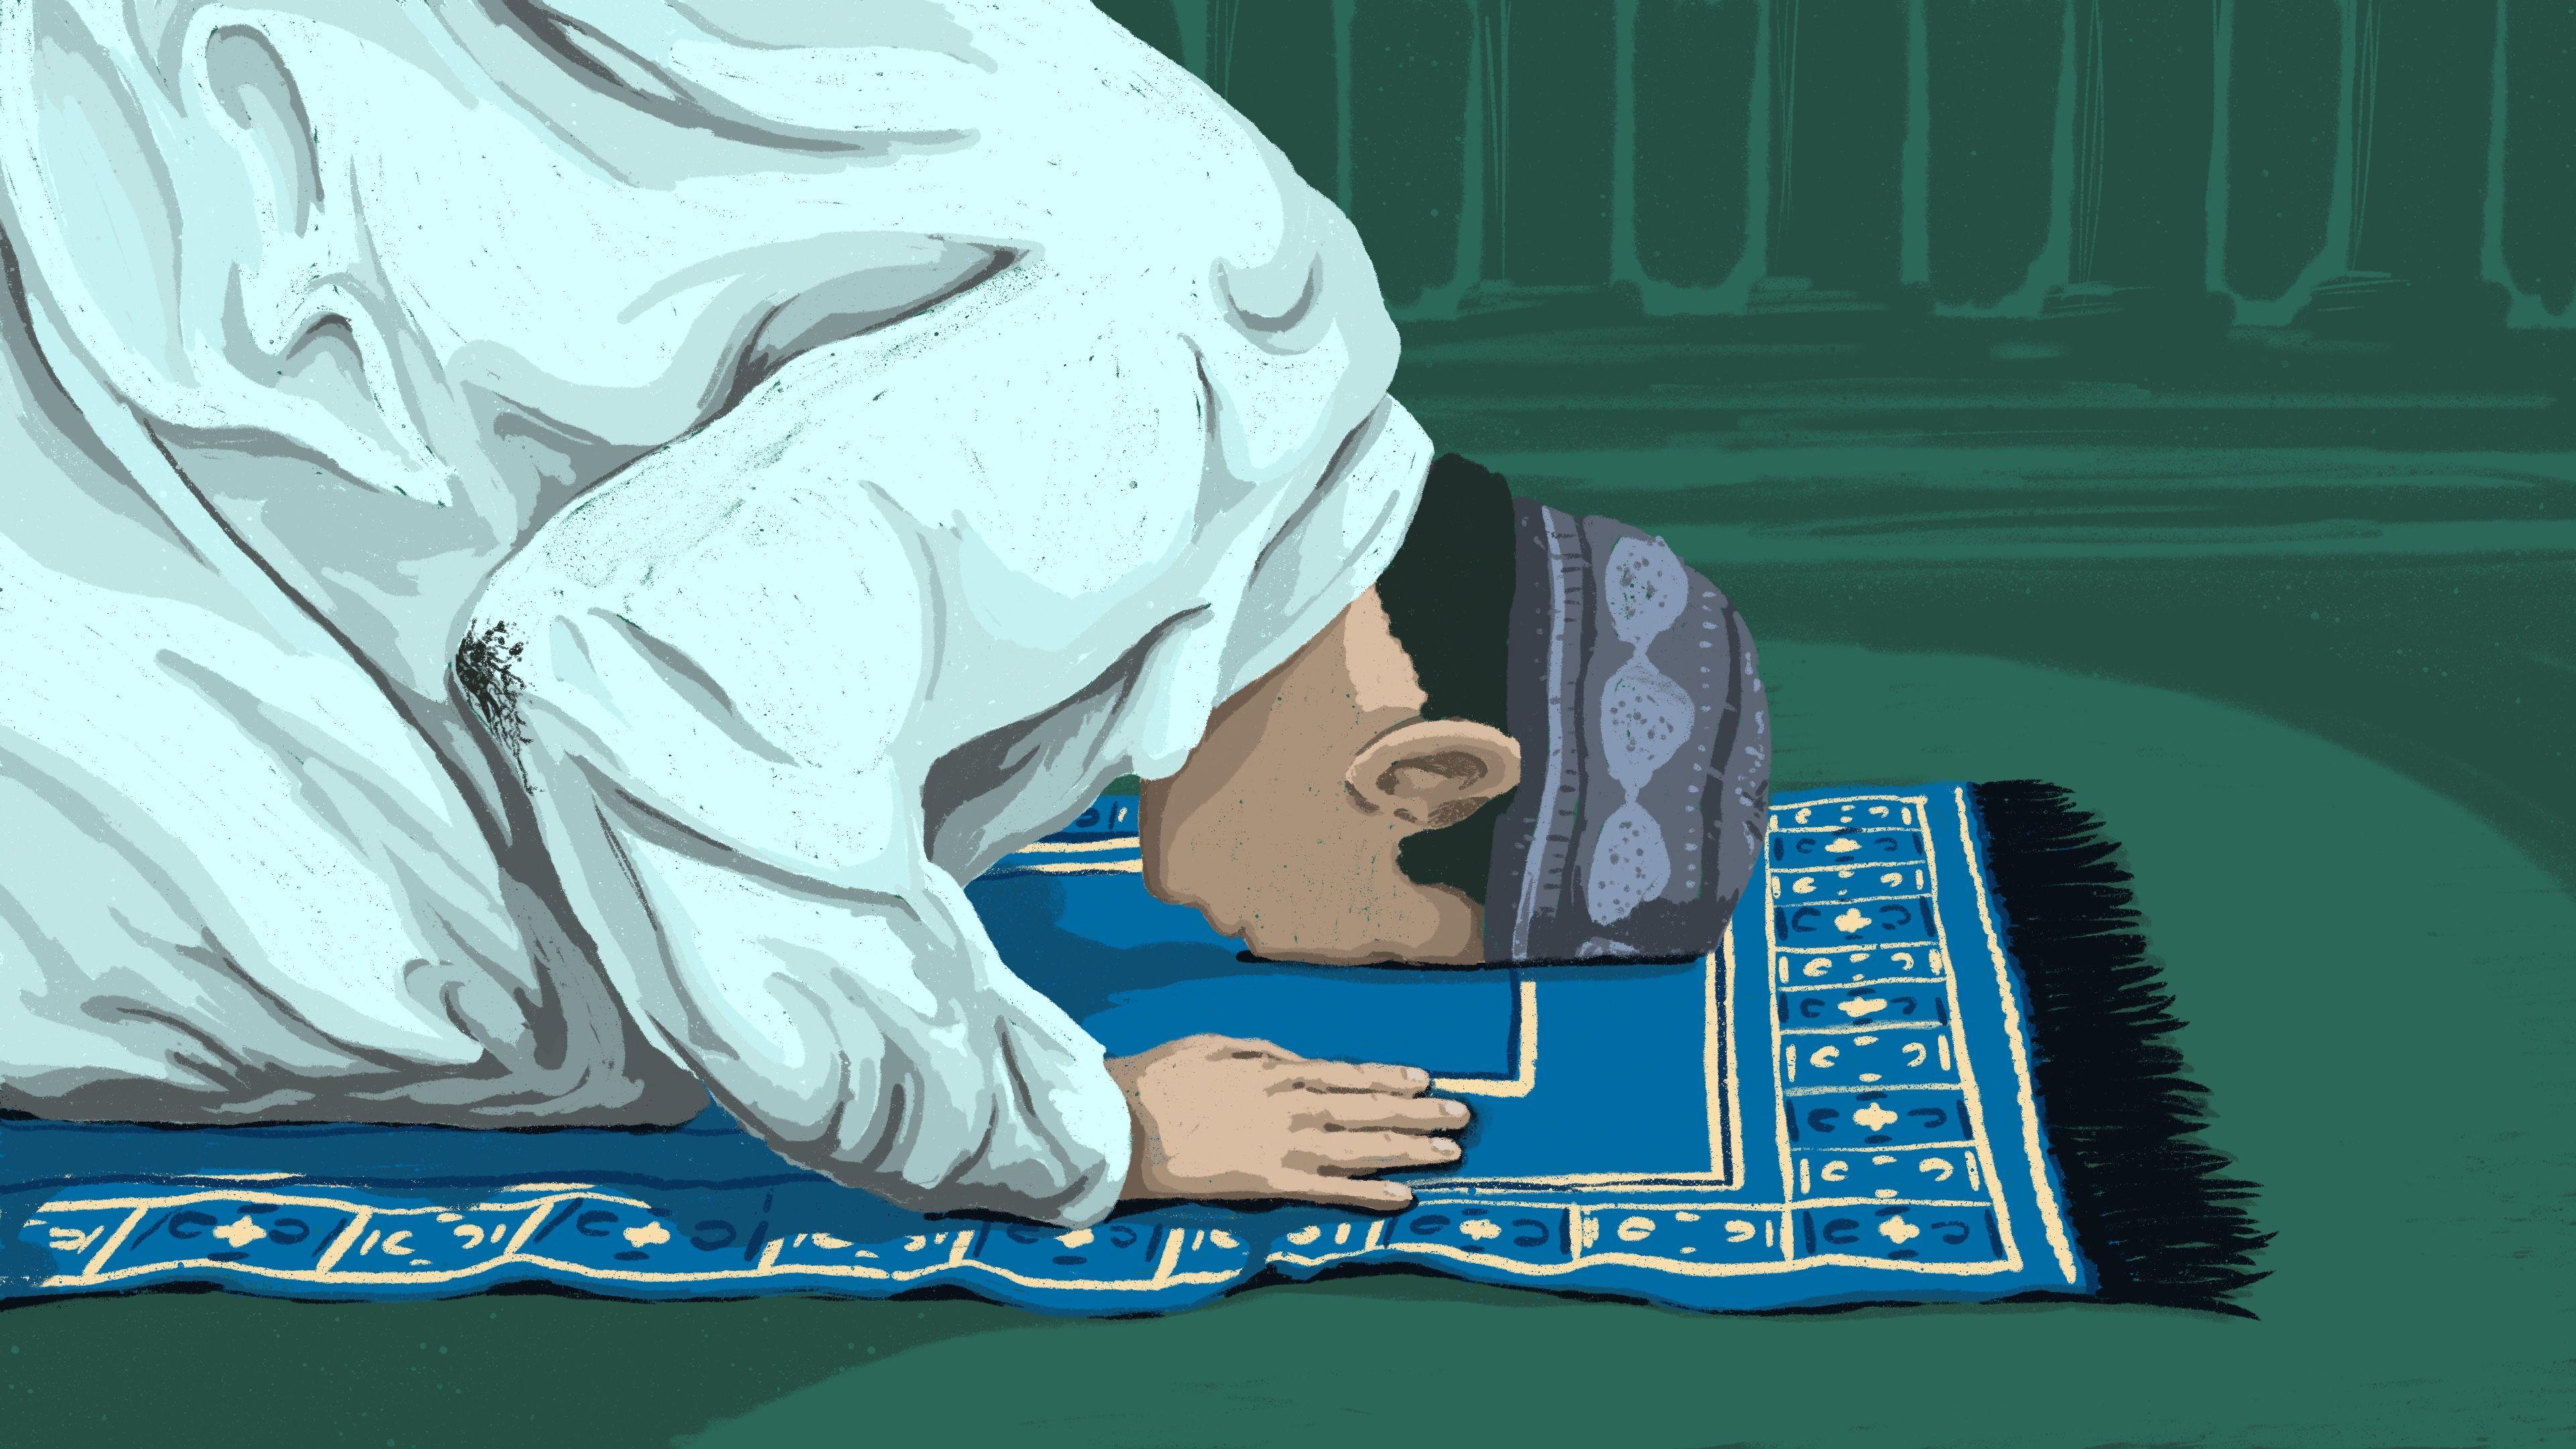 Muslim Praying Images